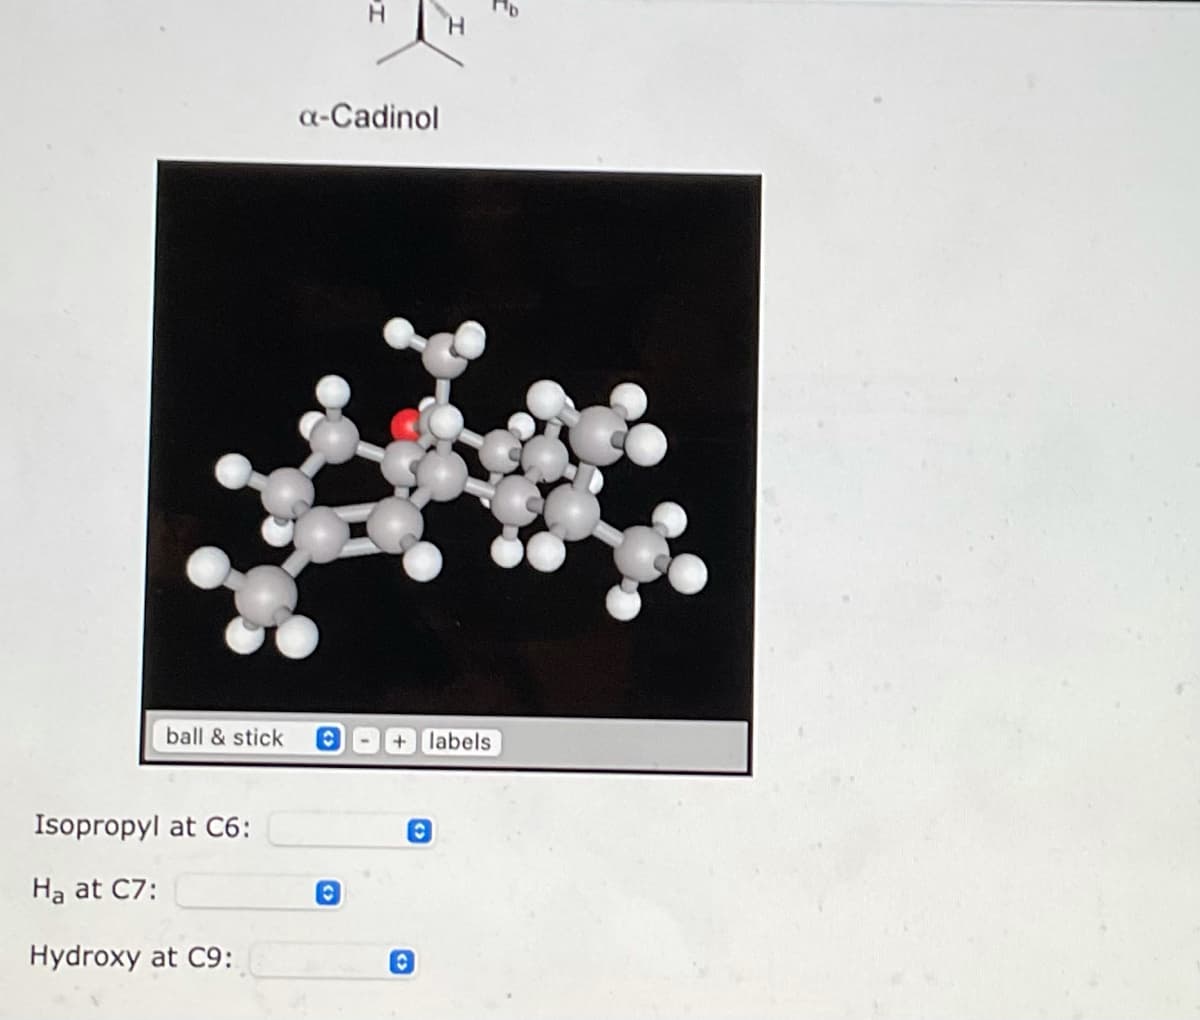 ball & stick
Isopropyl at C6:
Ha at C7:
Hydroxy at C9:
a-Cadinol
O
C
H
labels